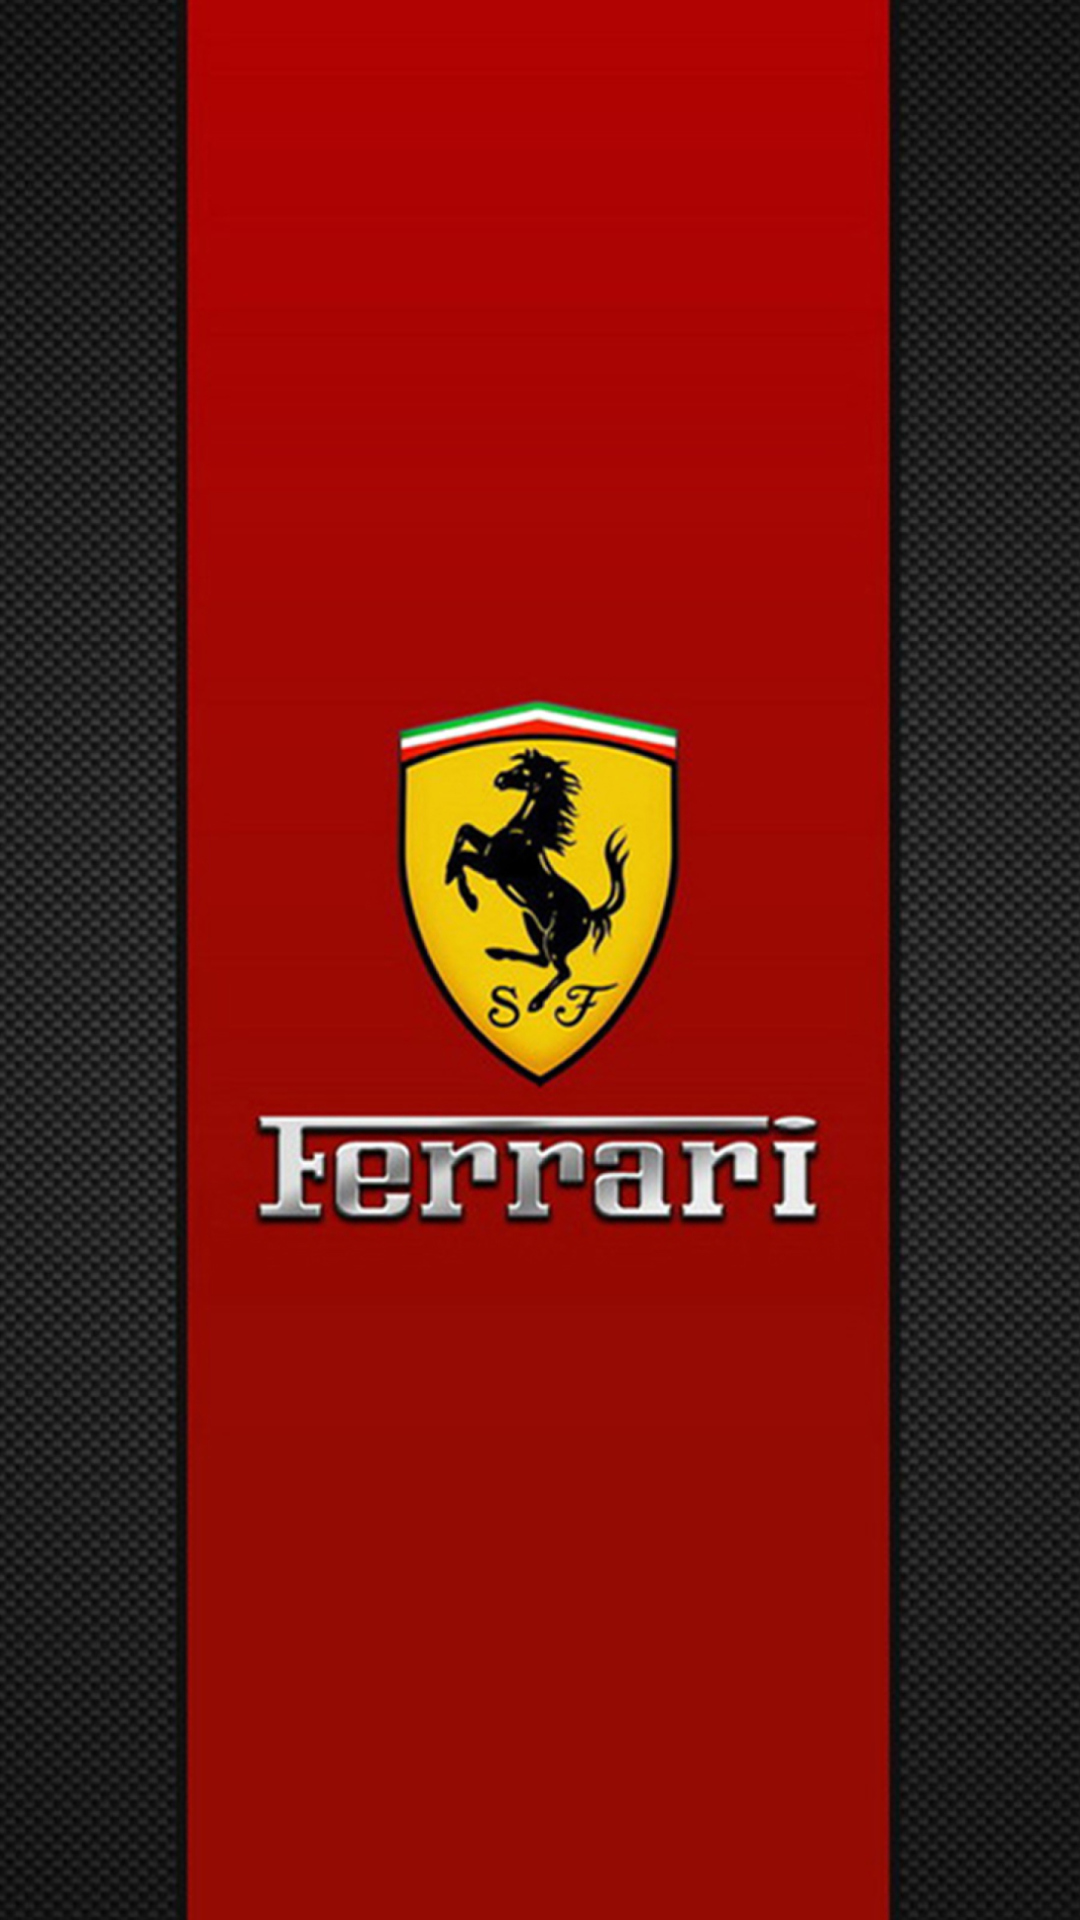 Sfondi Ferrari Emblem 1080x1920